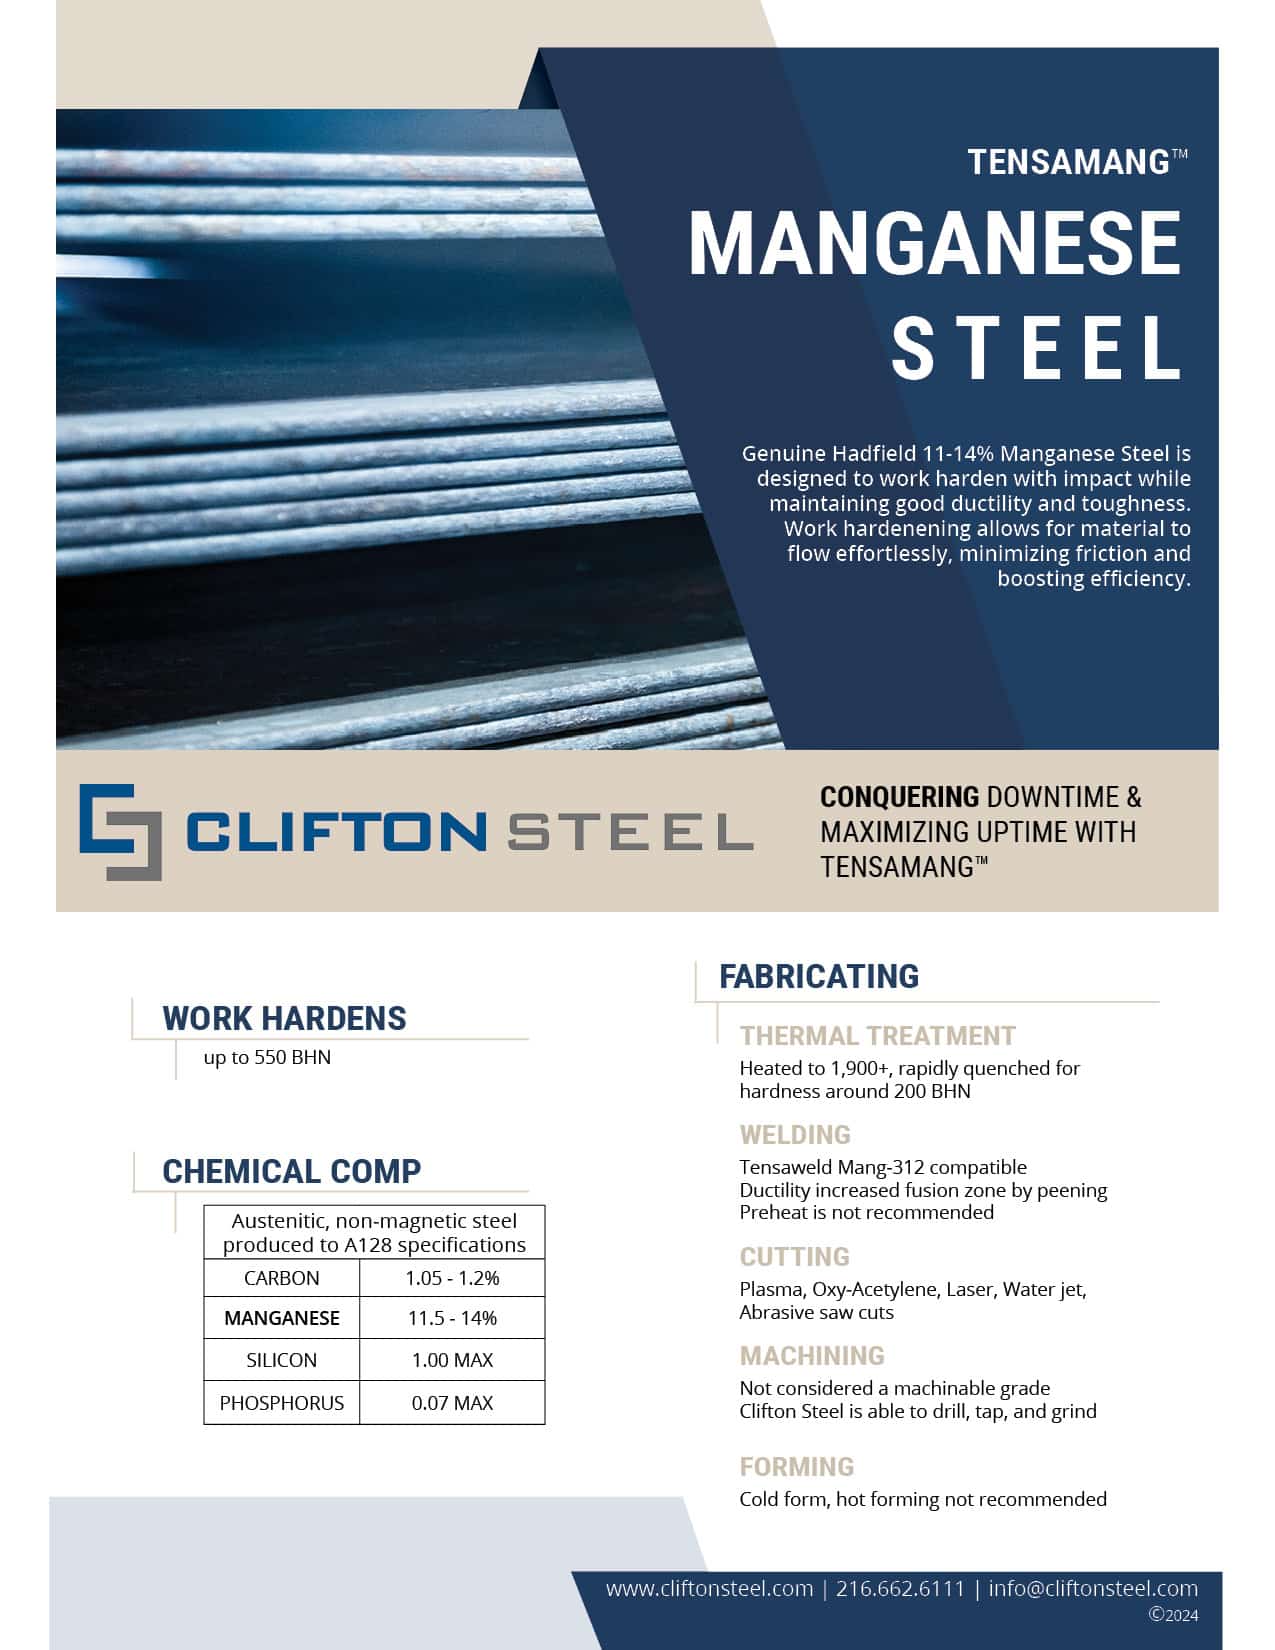 Manganese Steel brochure by Clifton Steel